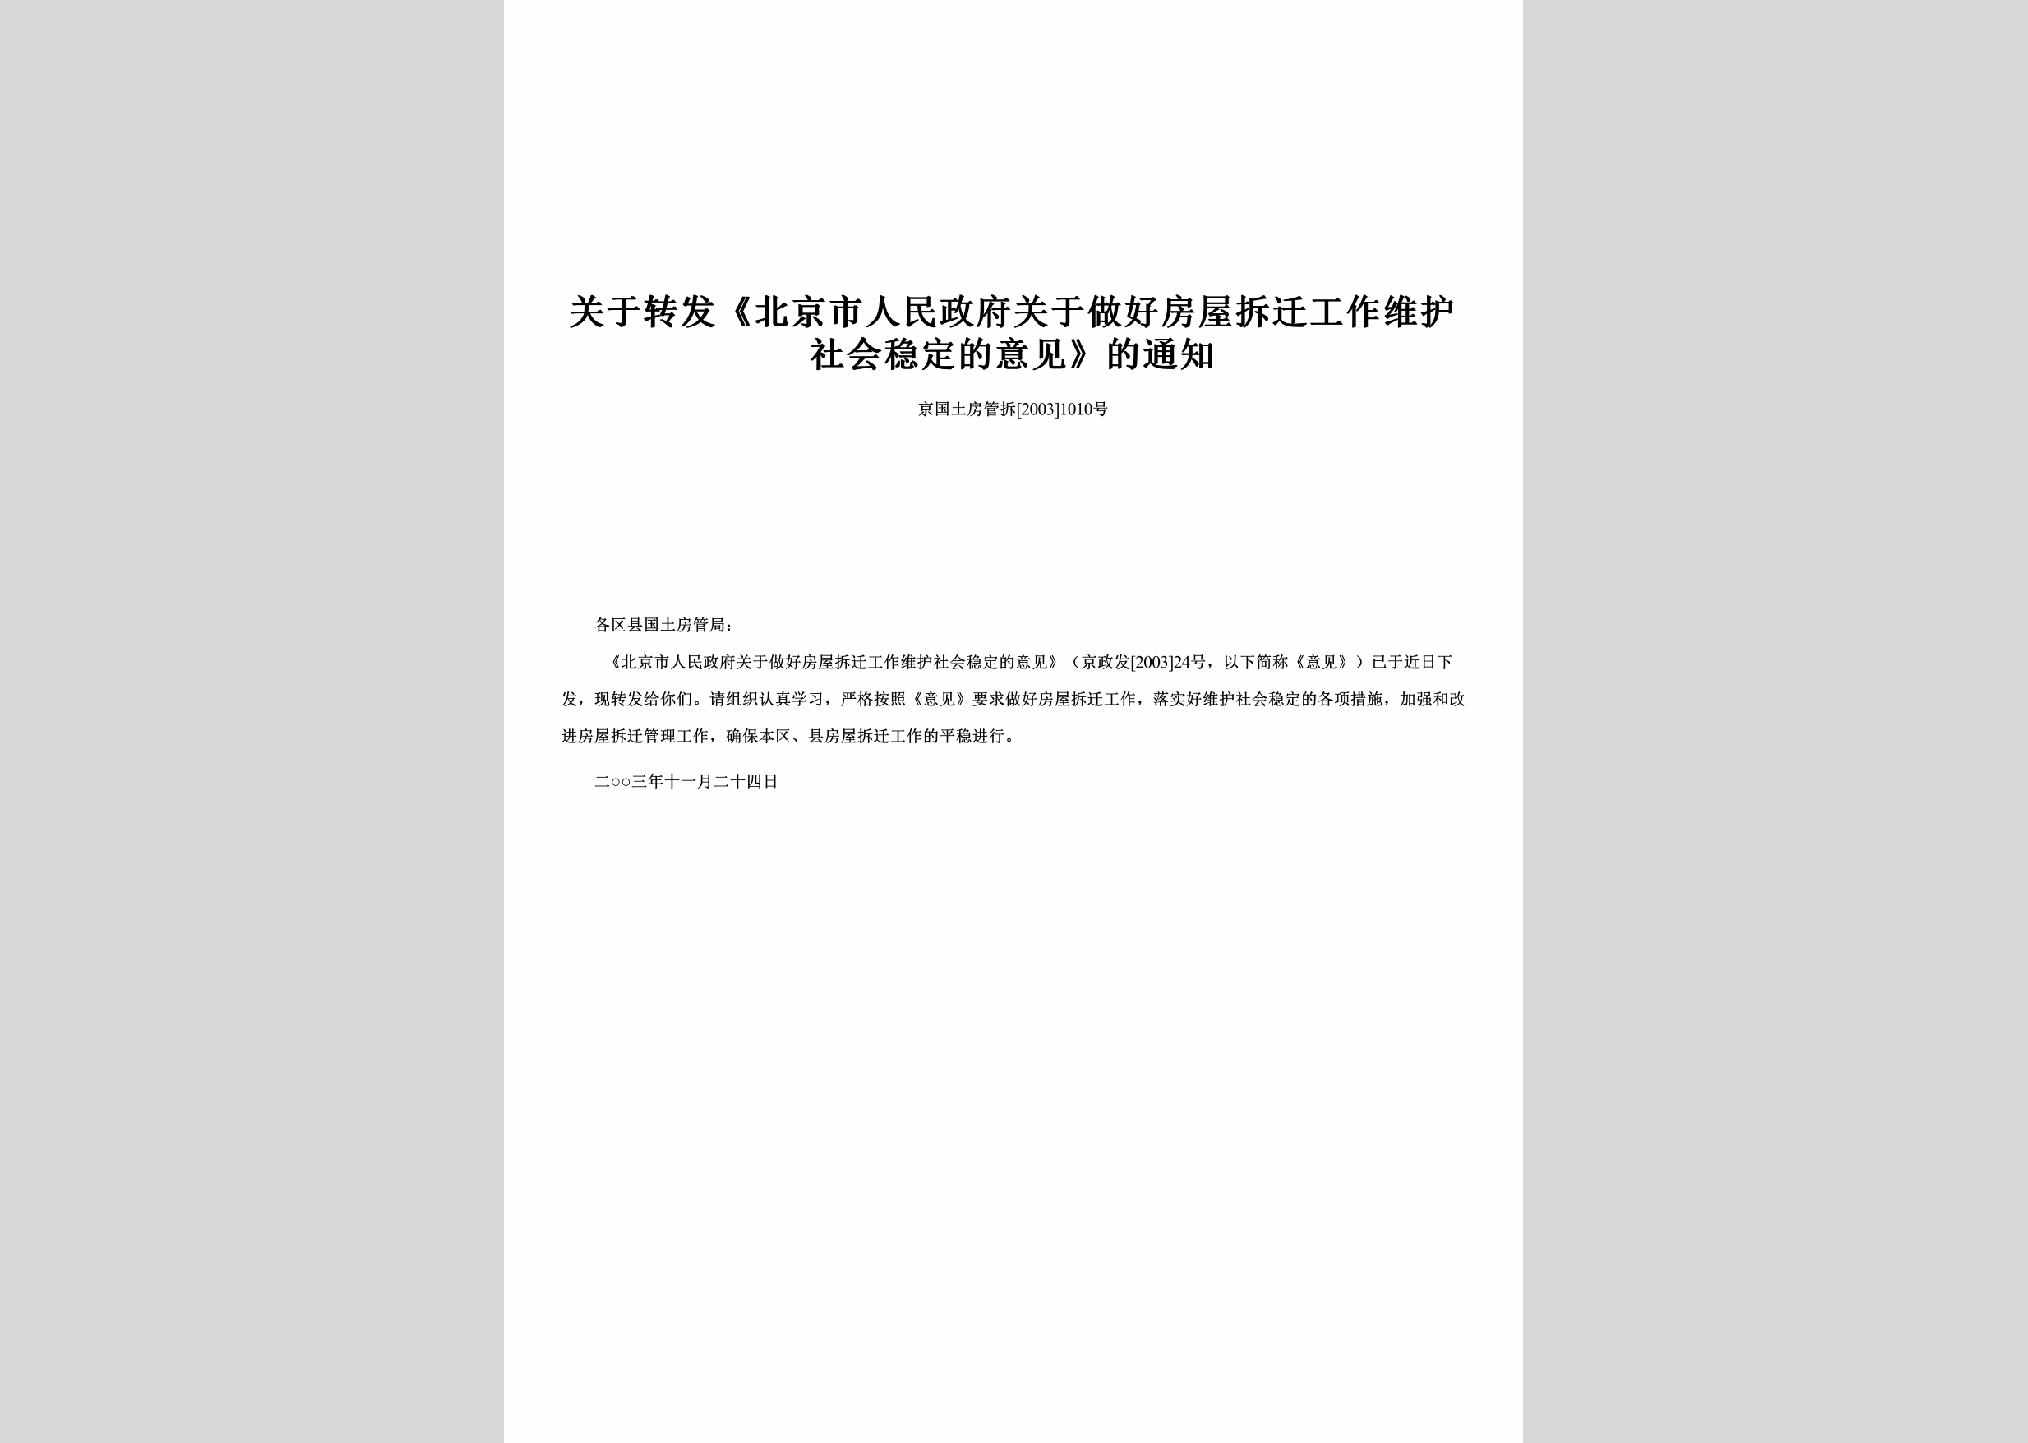 京国土房管拆[2003]1010号：关于转发《北京市人民政府关于做好房屋拆迁工作维护社会稳定的意见》的通知